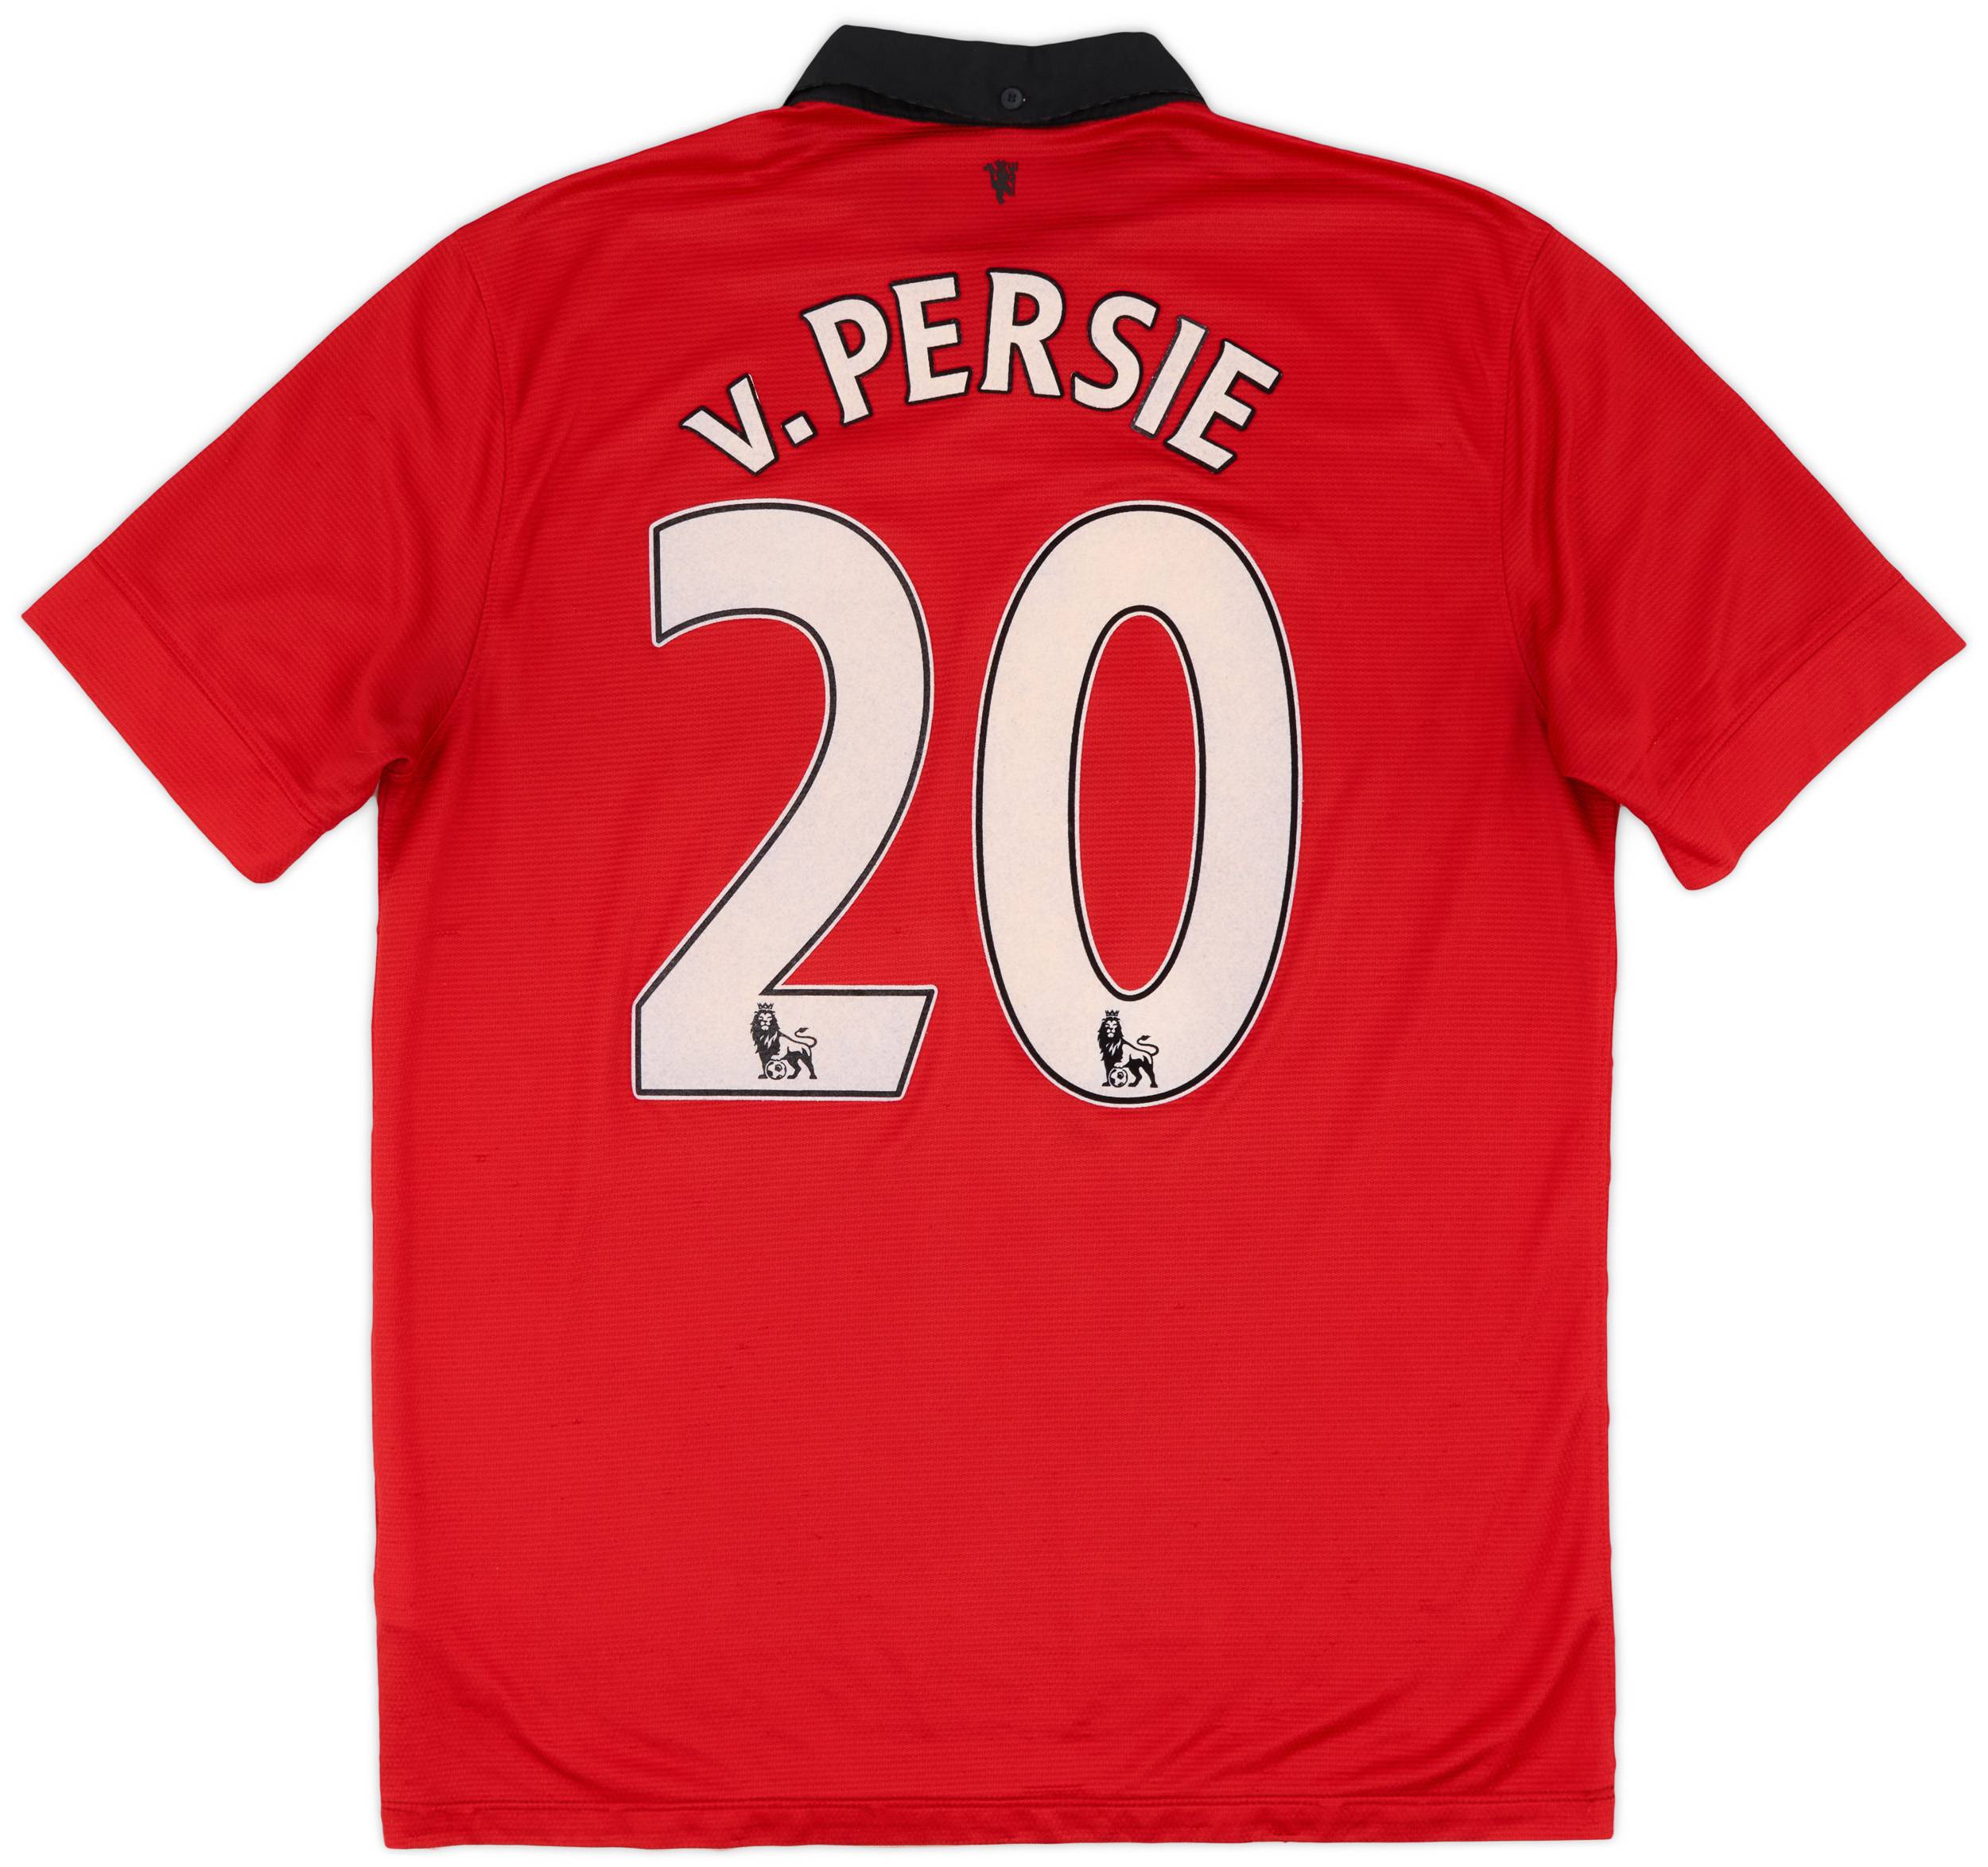 2013-14 Manchester United Home Shirt v.Persie #20 - 5/10 - (L)